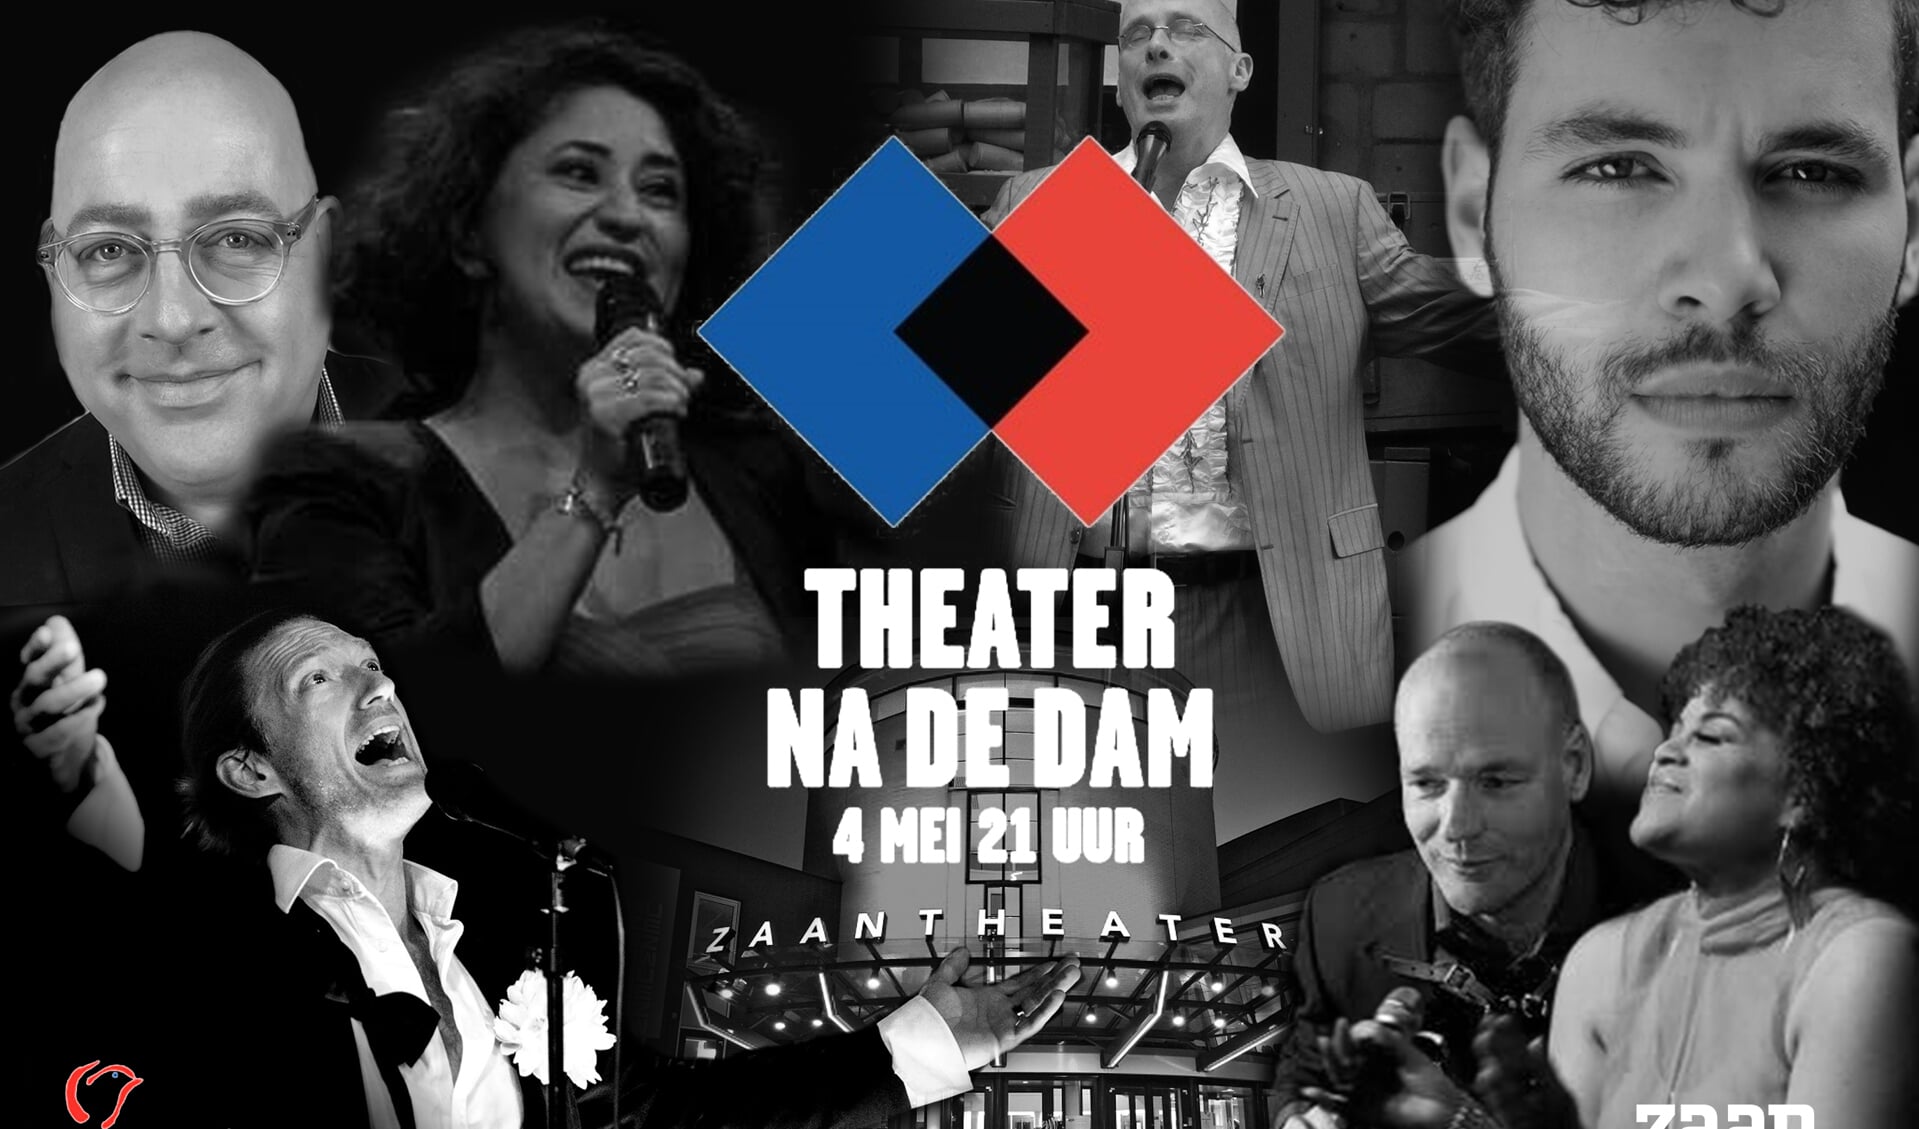 Ook het Zaantheater doet mee aan de twaalfde editie van Theater na de Dam op 4 mei.  